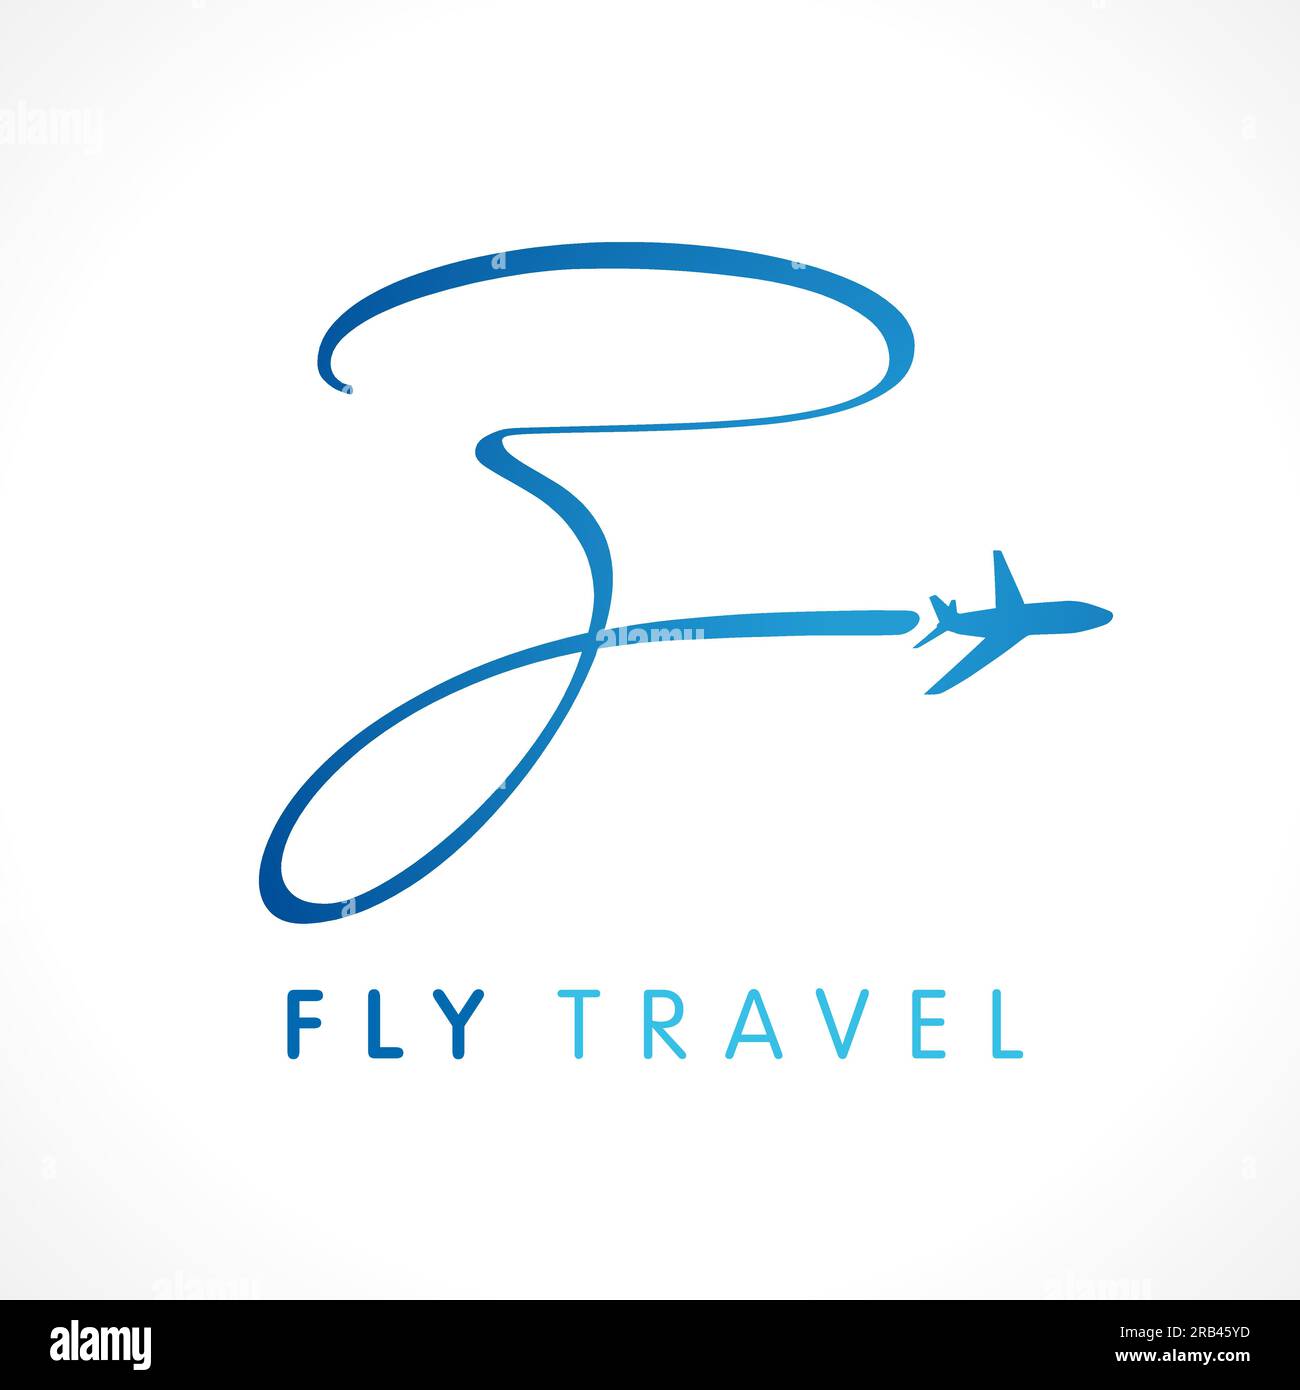 Z Fly Travel Firmenlogo. Kreative Kunst, modernes typografisches Design mit Flugzeug. Beschriftungskonzept für Reisebüro, Titeltitel oder Monogramm mit Logo Stock Vektor